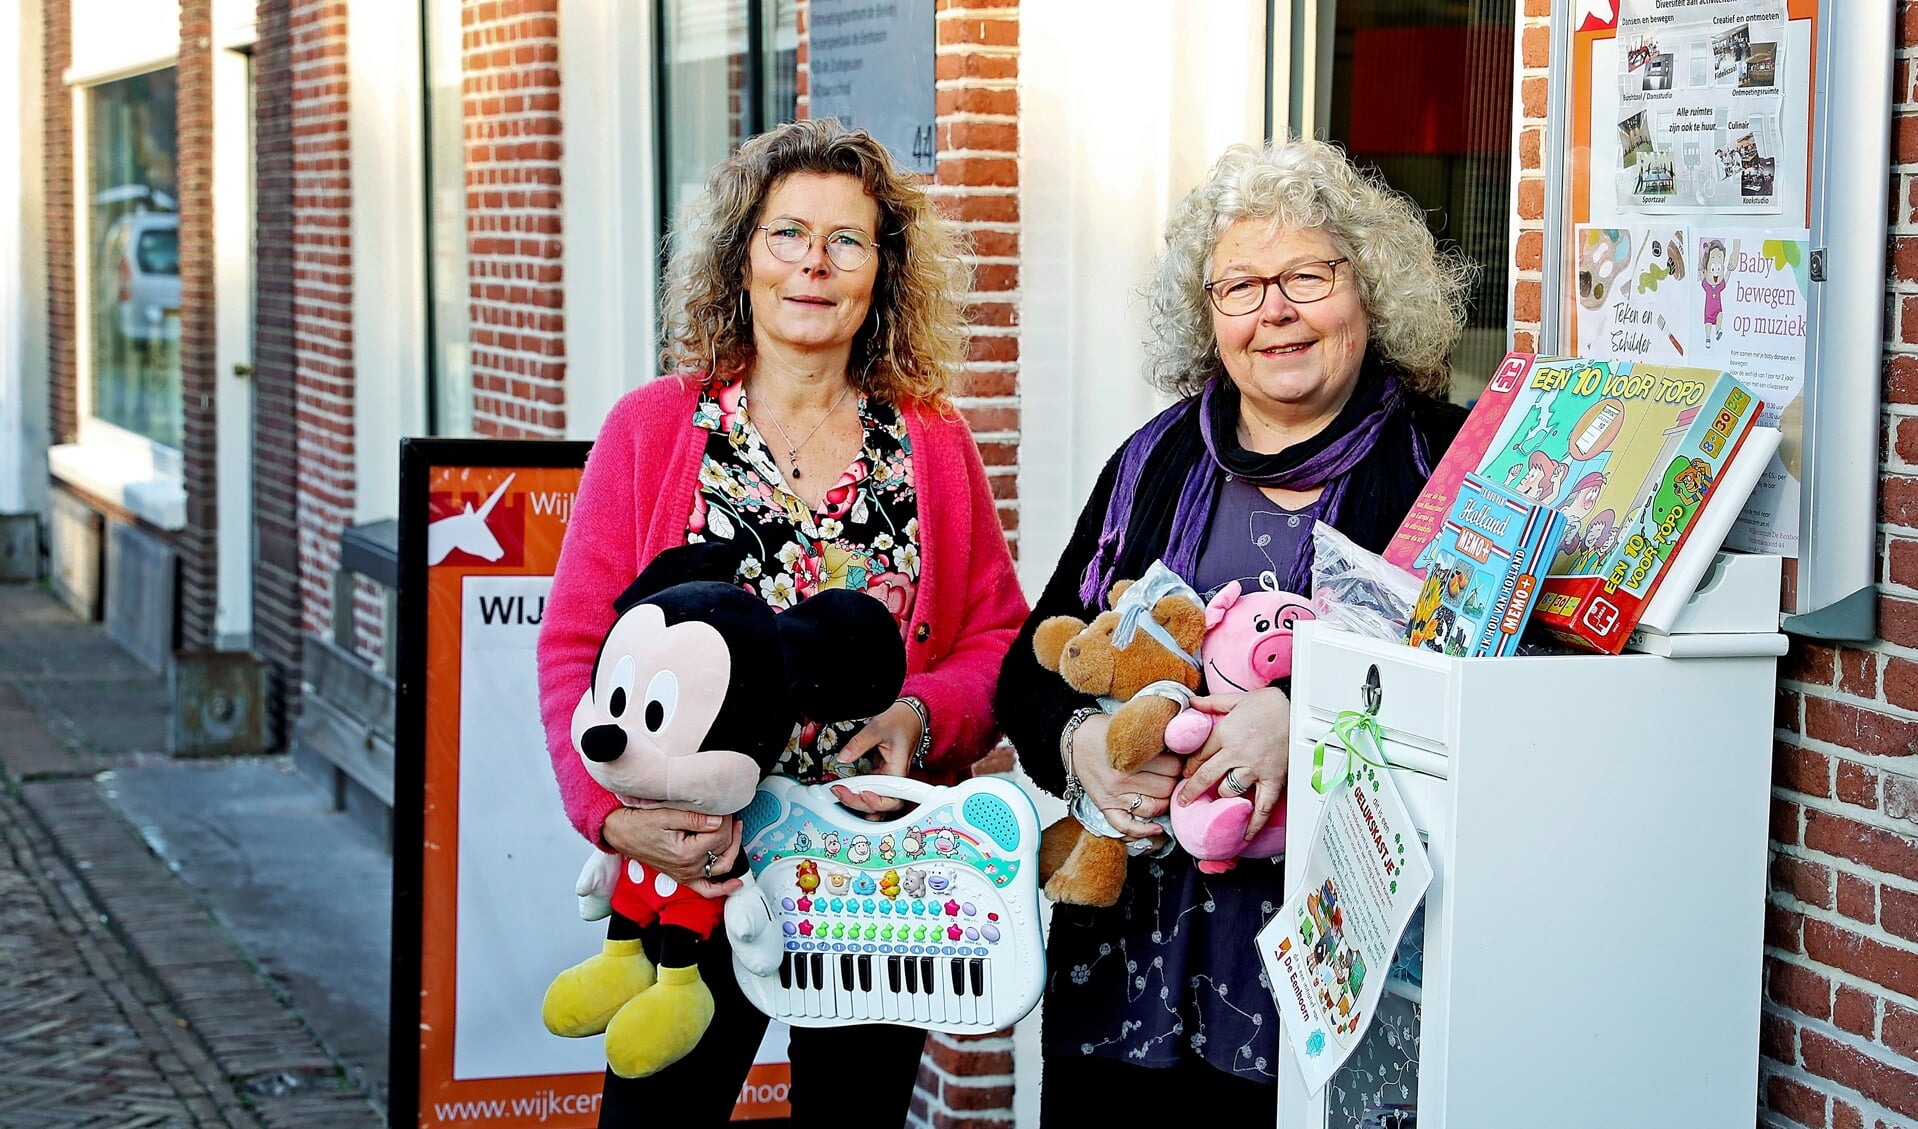 Susanne Buur en Jacqueline Schouten van wijkcentrum de Eenhoorn aan Verdronkenoord 44.